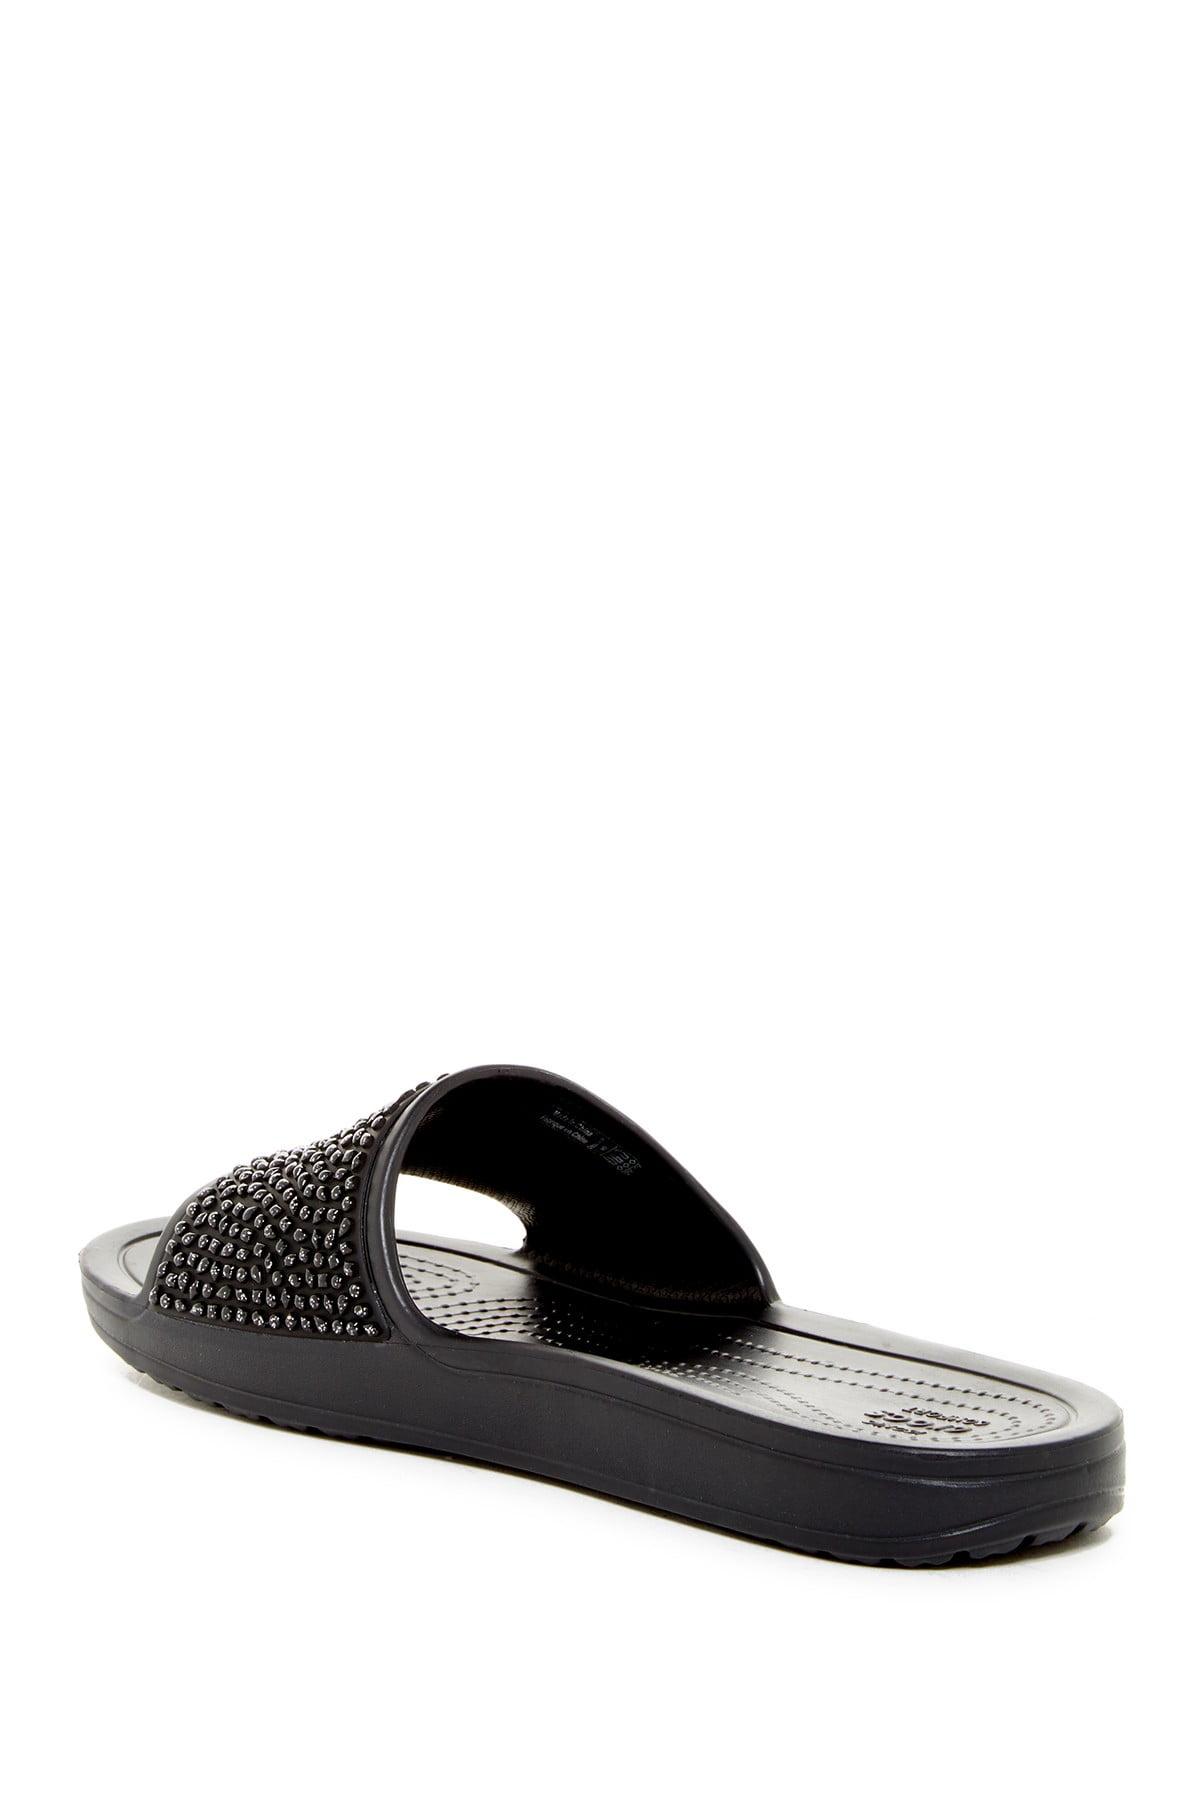 Crocs™ Sloane Embellished Slide Sandal in Black | Lyst